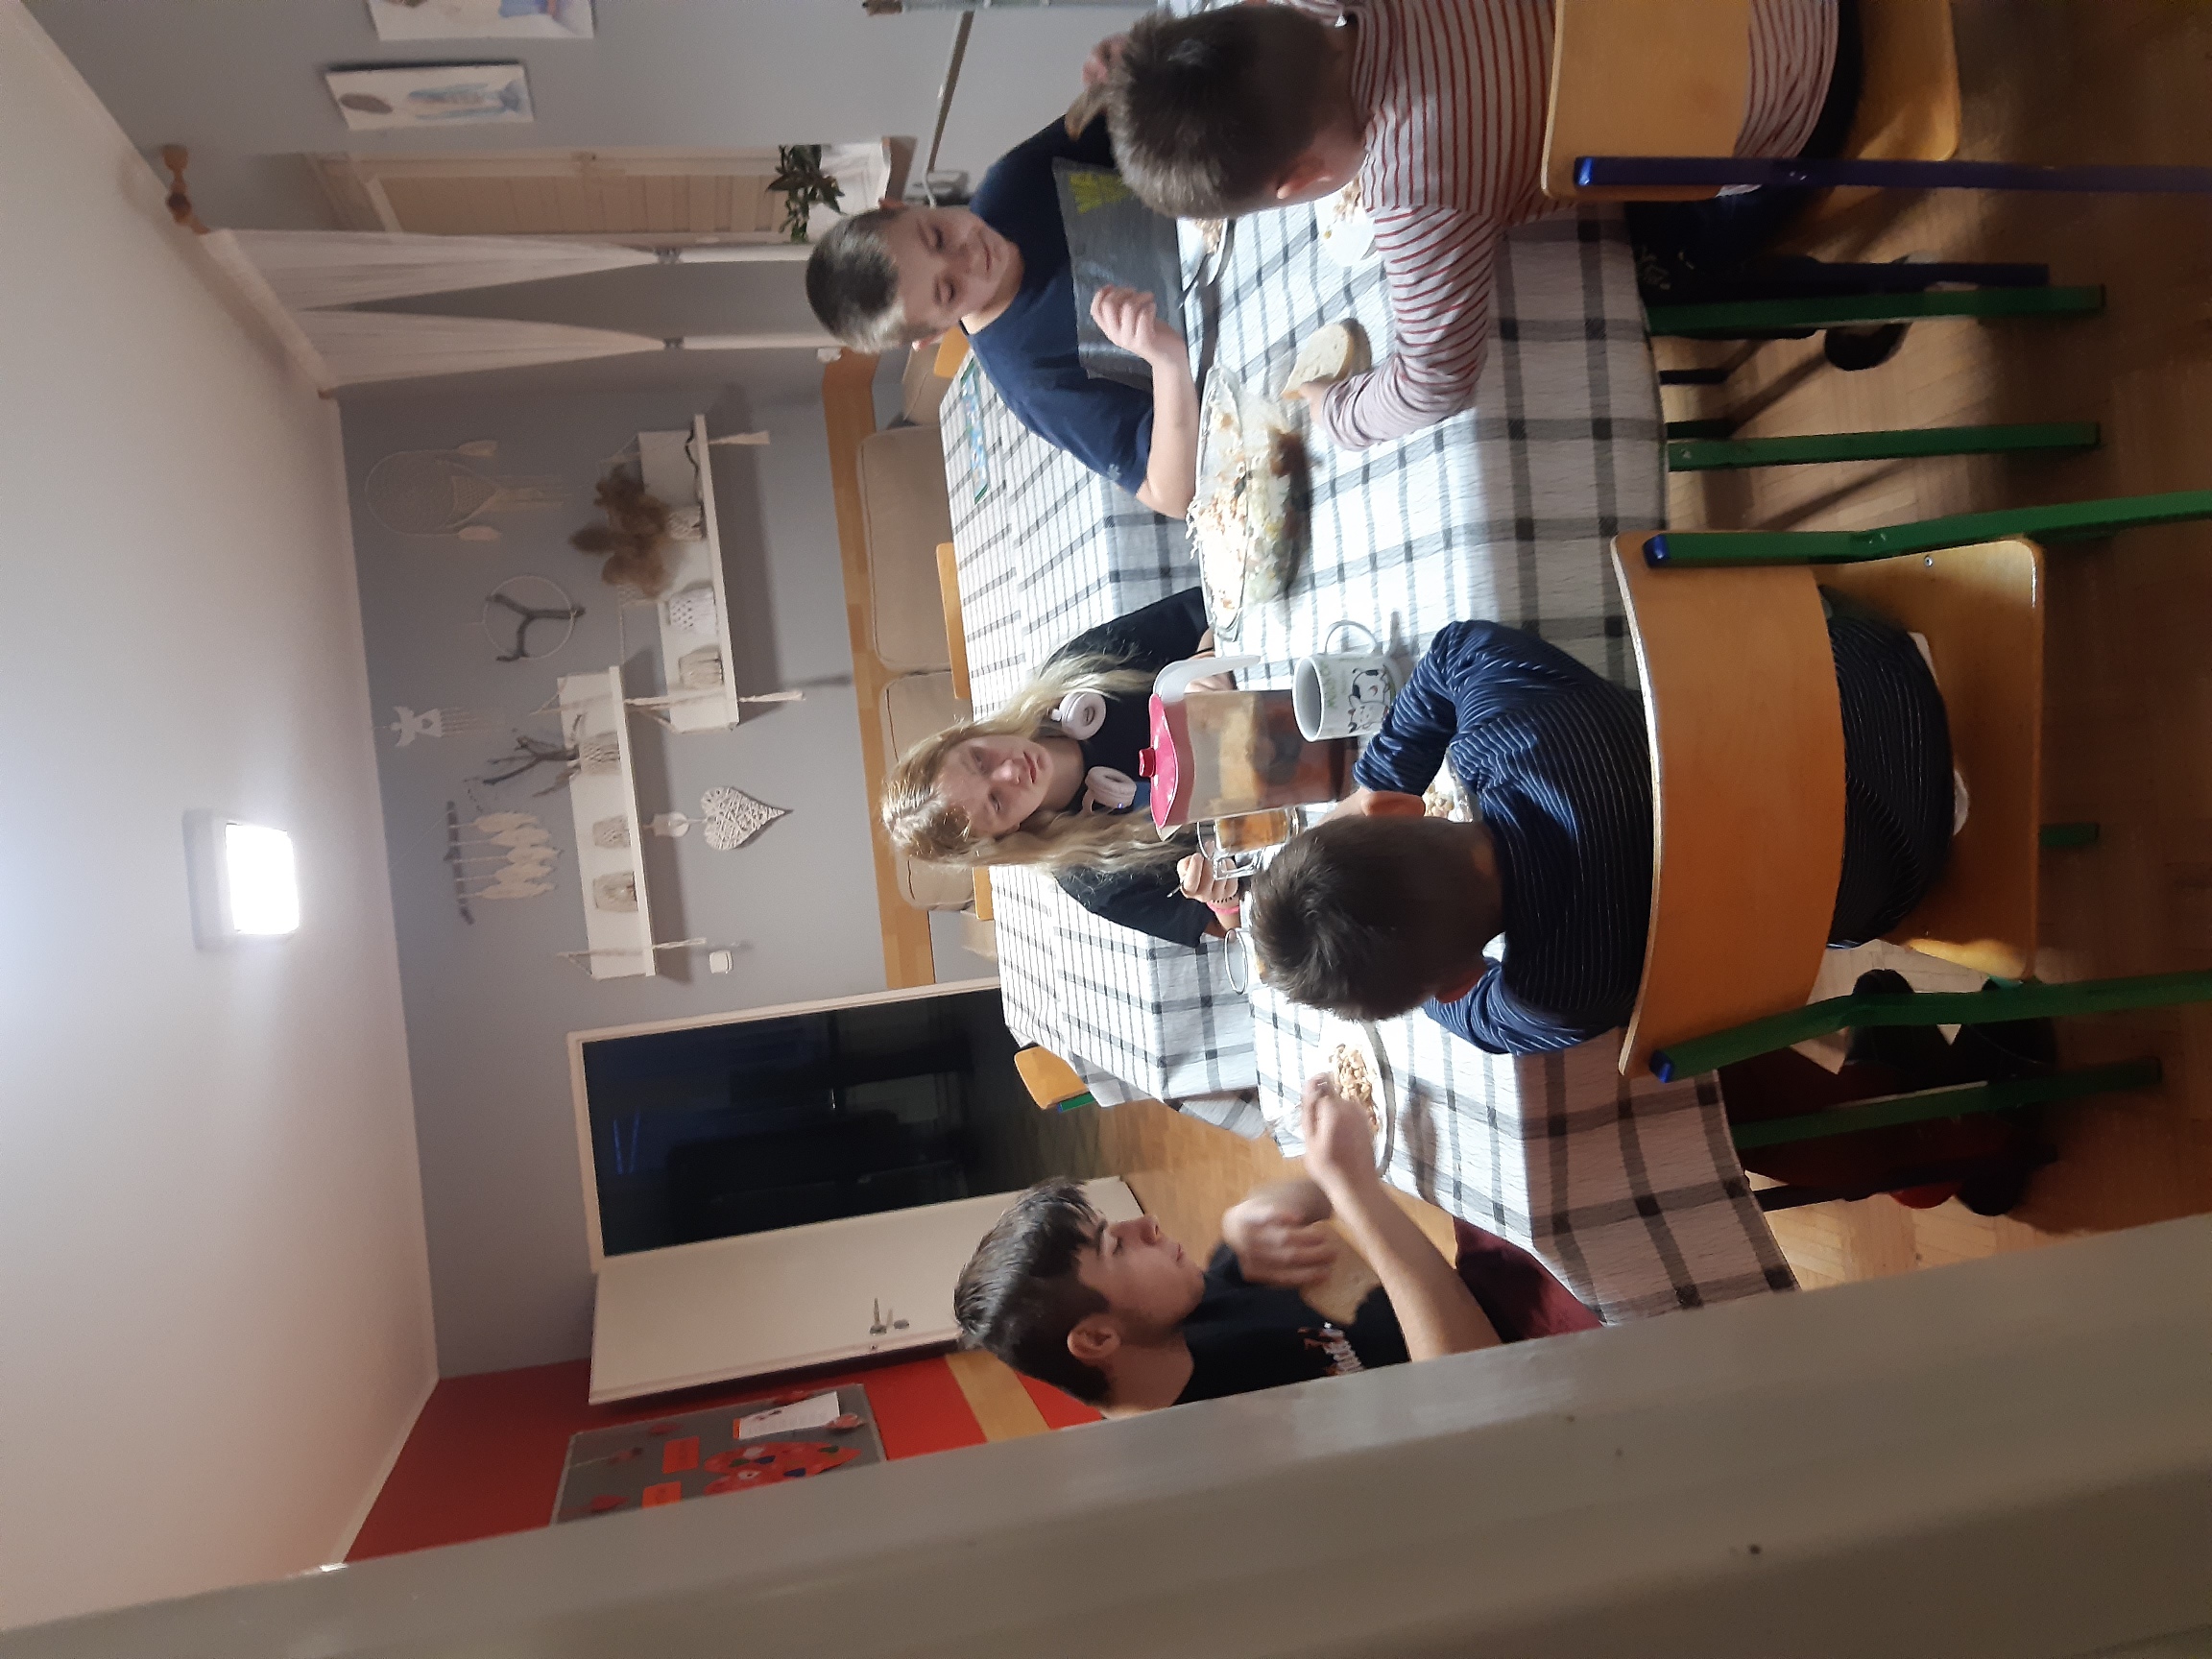 wychowankowie siedzą przy stole i jedzą przygotowaną przez siebie sałatkę